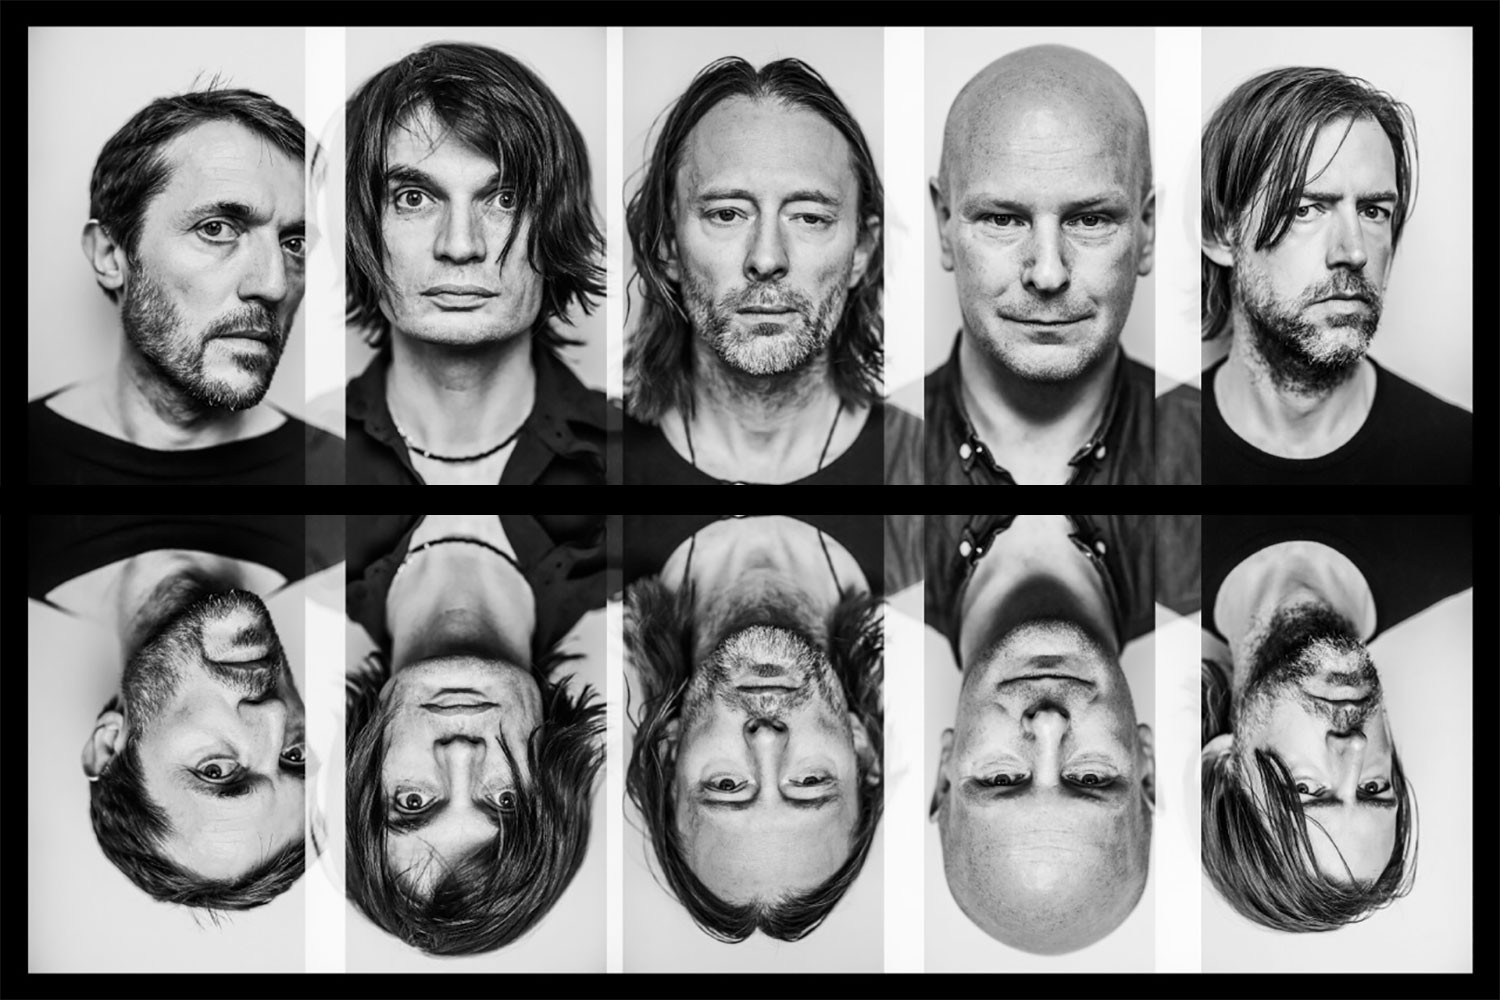 группа Radiohead может выступить в фортнайт 1 - Музыкальная группа Radiohead может выступить в фортнайт